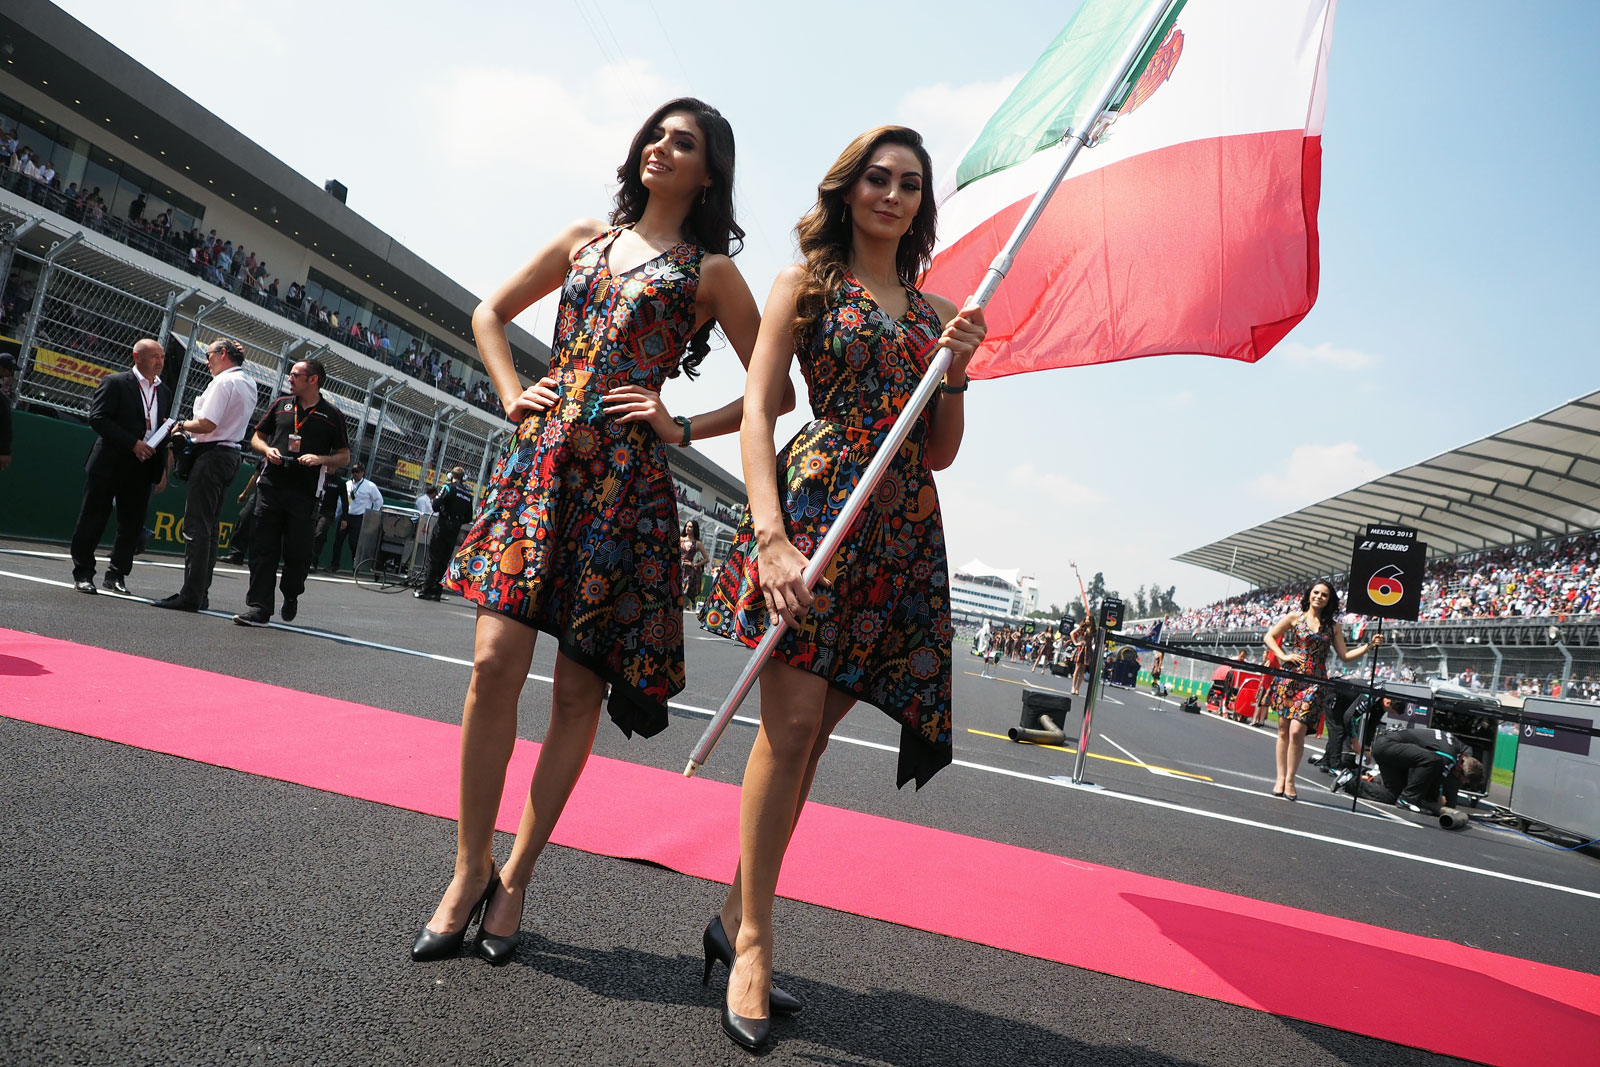 【F1ビューティー】2015 Rd.17 メキシコGP編「今季ナンバーワン!?のメキシコらしい美女たち！」